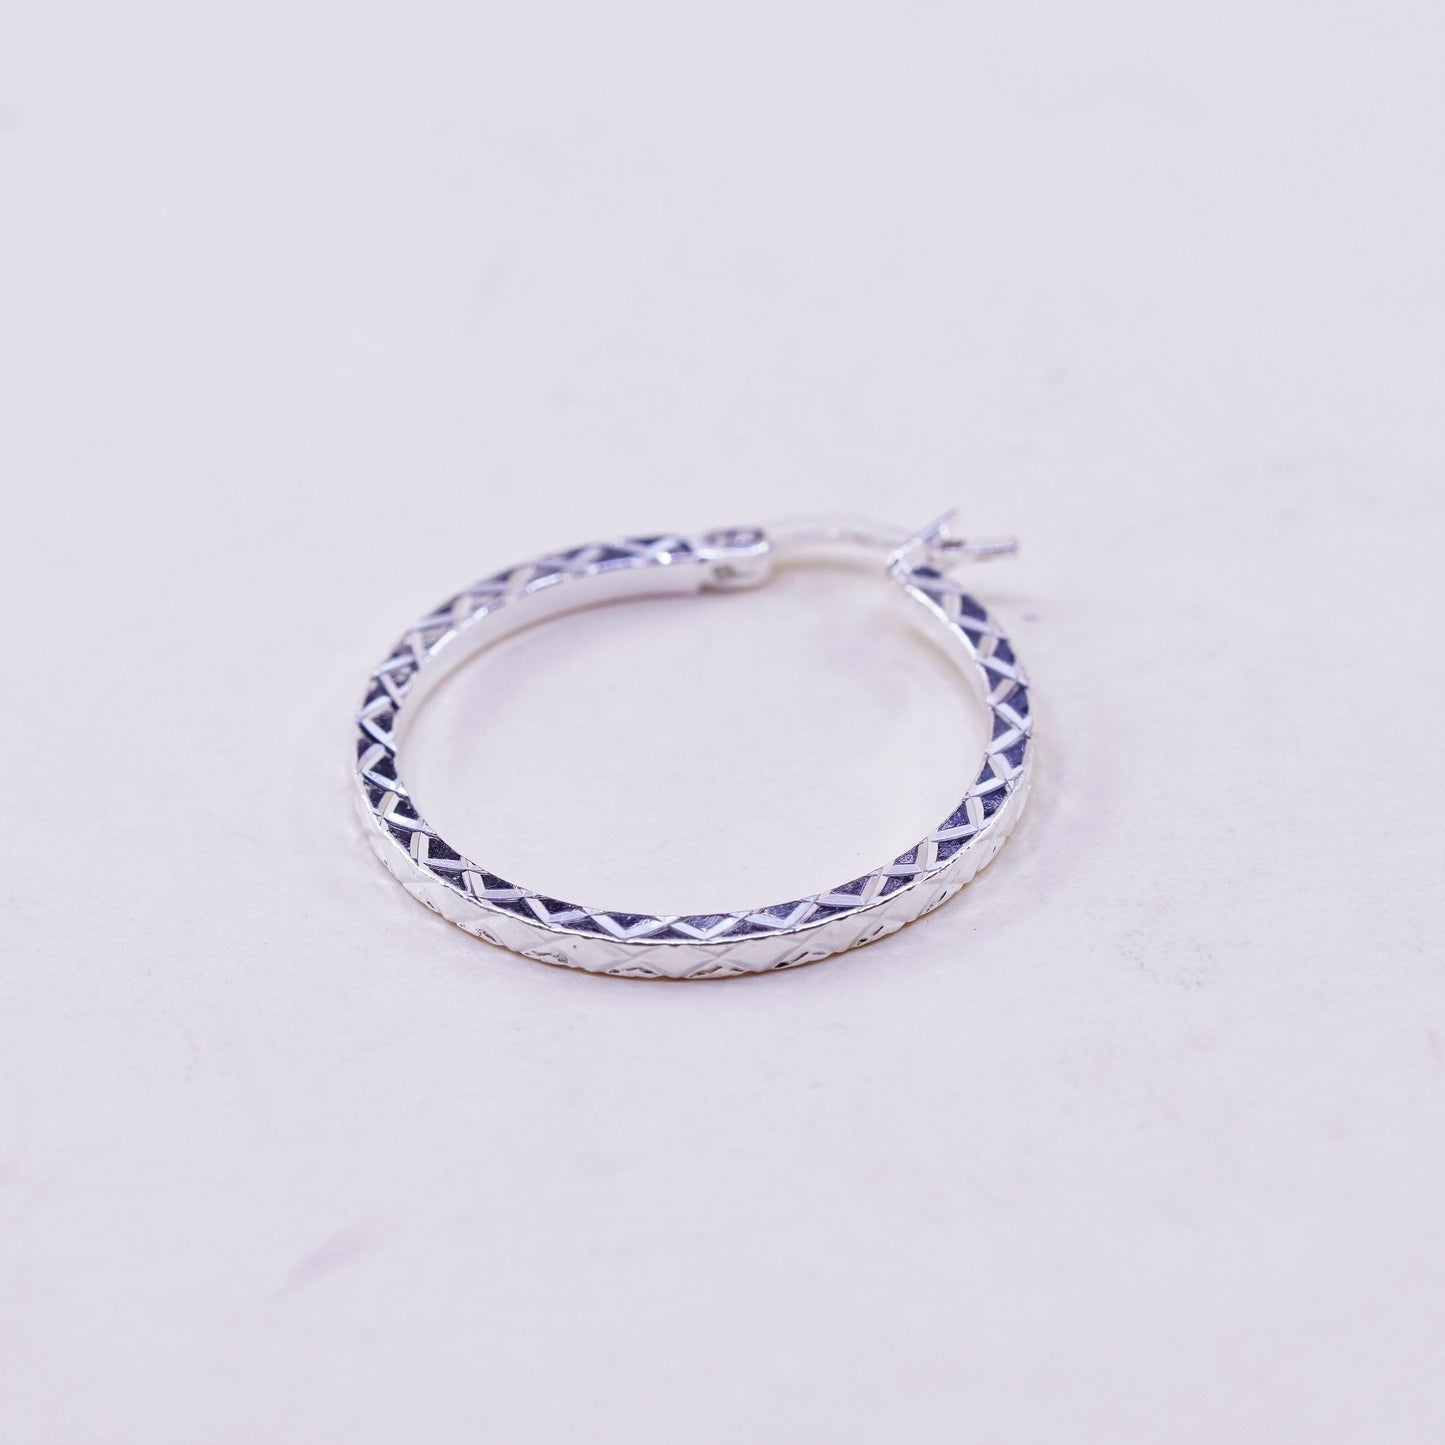 1”, Vintage sterling silver loop earrings, textured minimalist primitive hoops